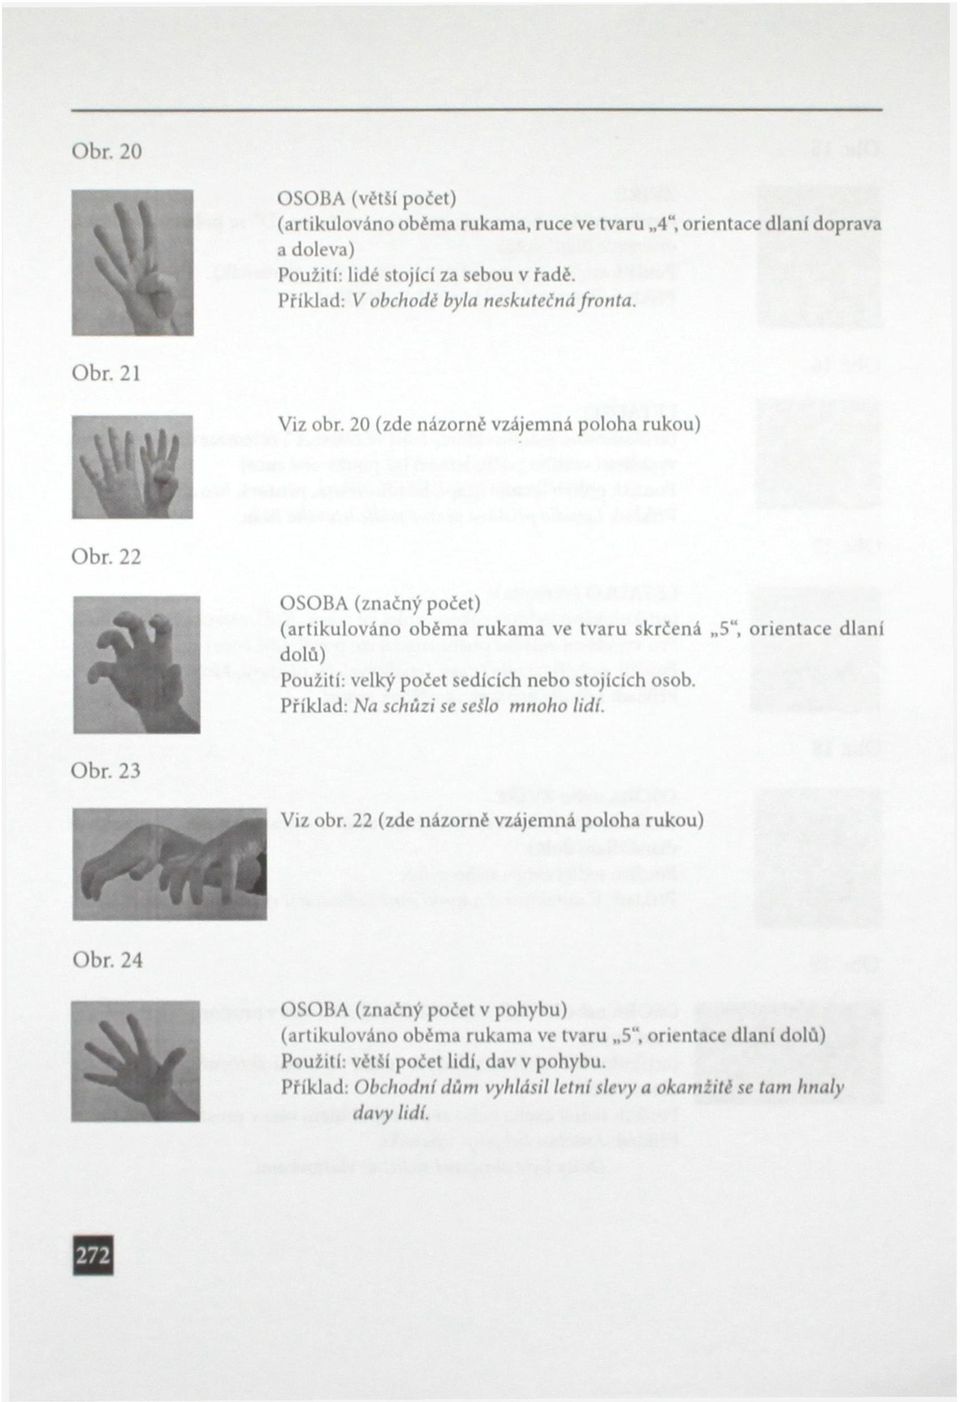 20 (zde názorné vzájemná poloha rukou) OSOBA (značný počet) (artikulováno oběma rukama ve tvaru skrčená 5", orientace dlaní dolů) Použití: velký počet sedících nebo